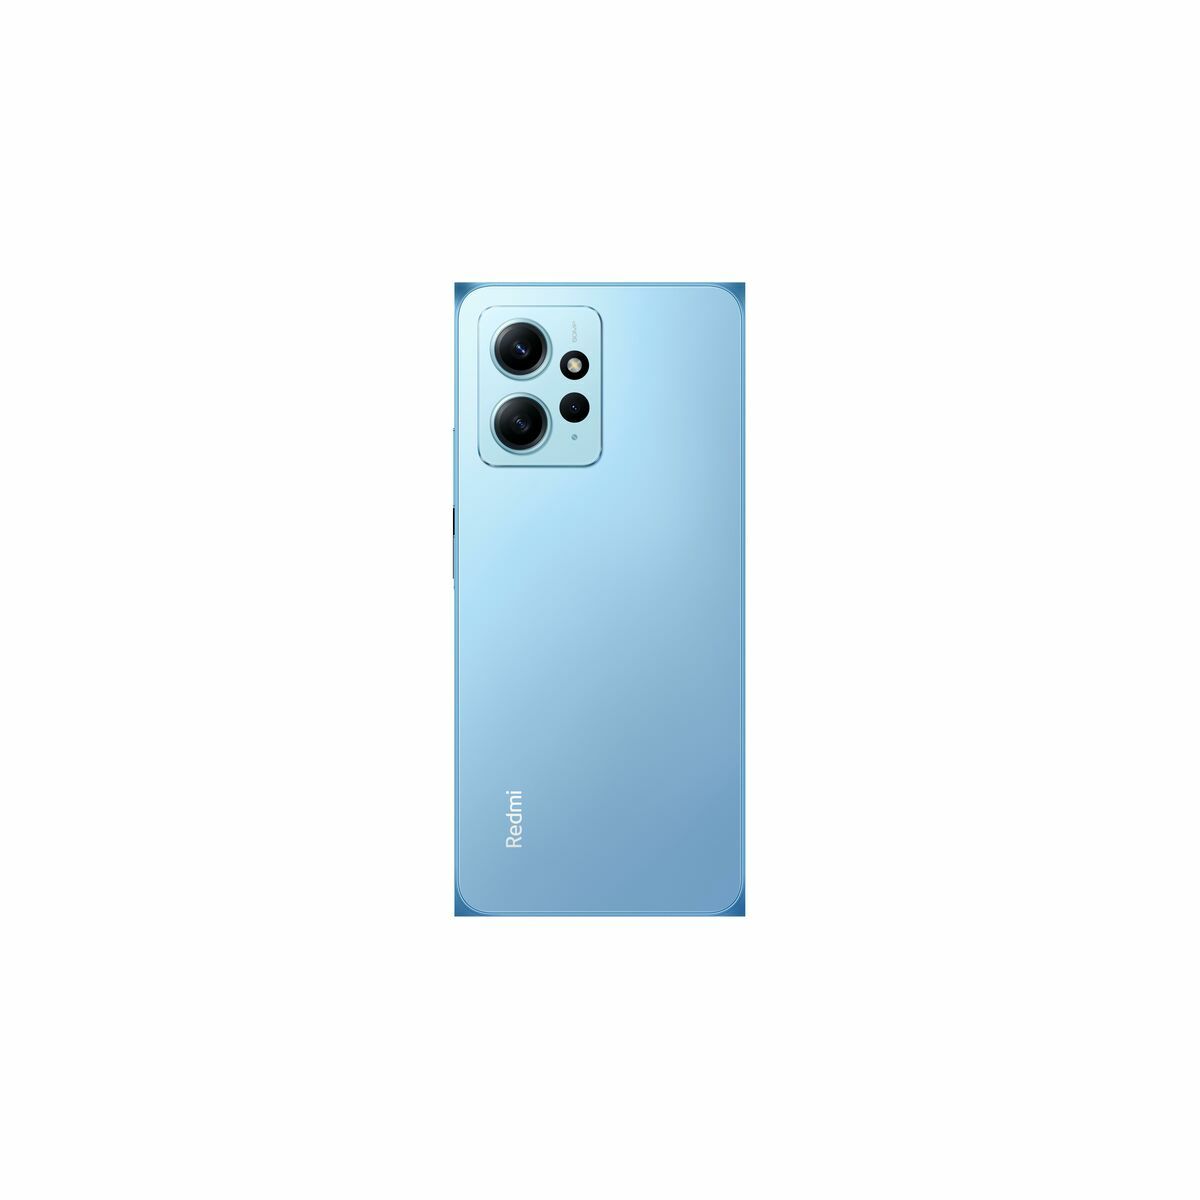 Smartphone Xiaomi Blau 256 GB - CA International  